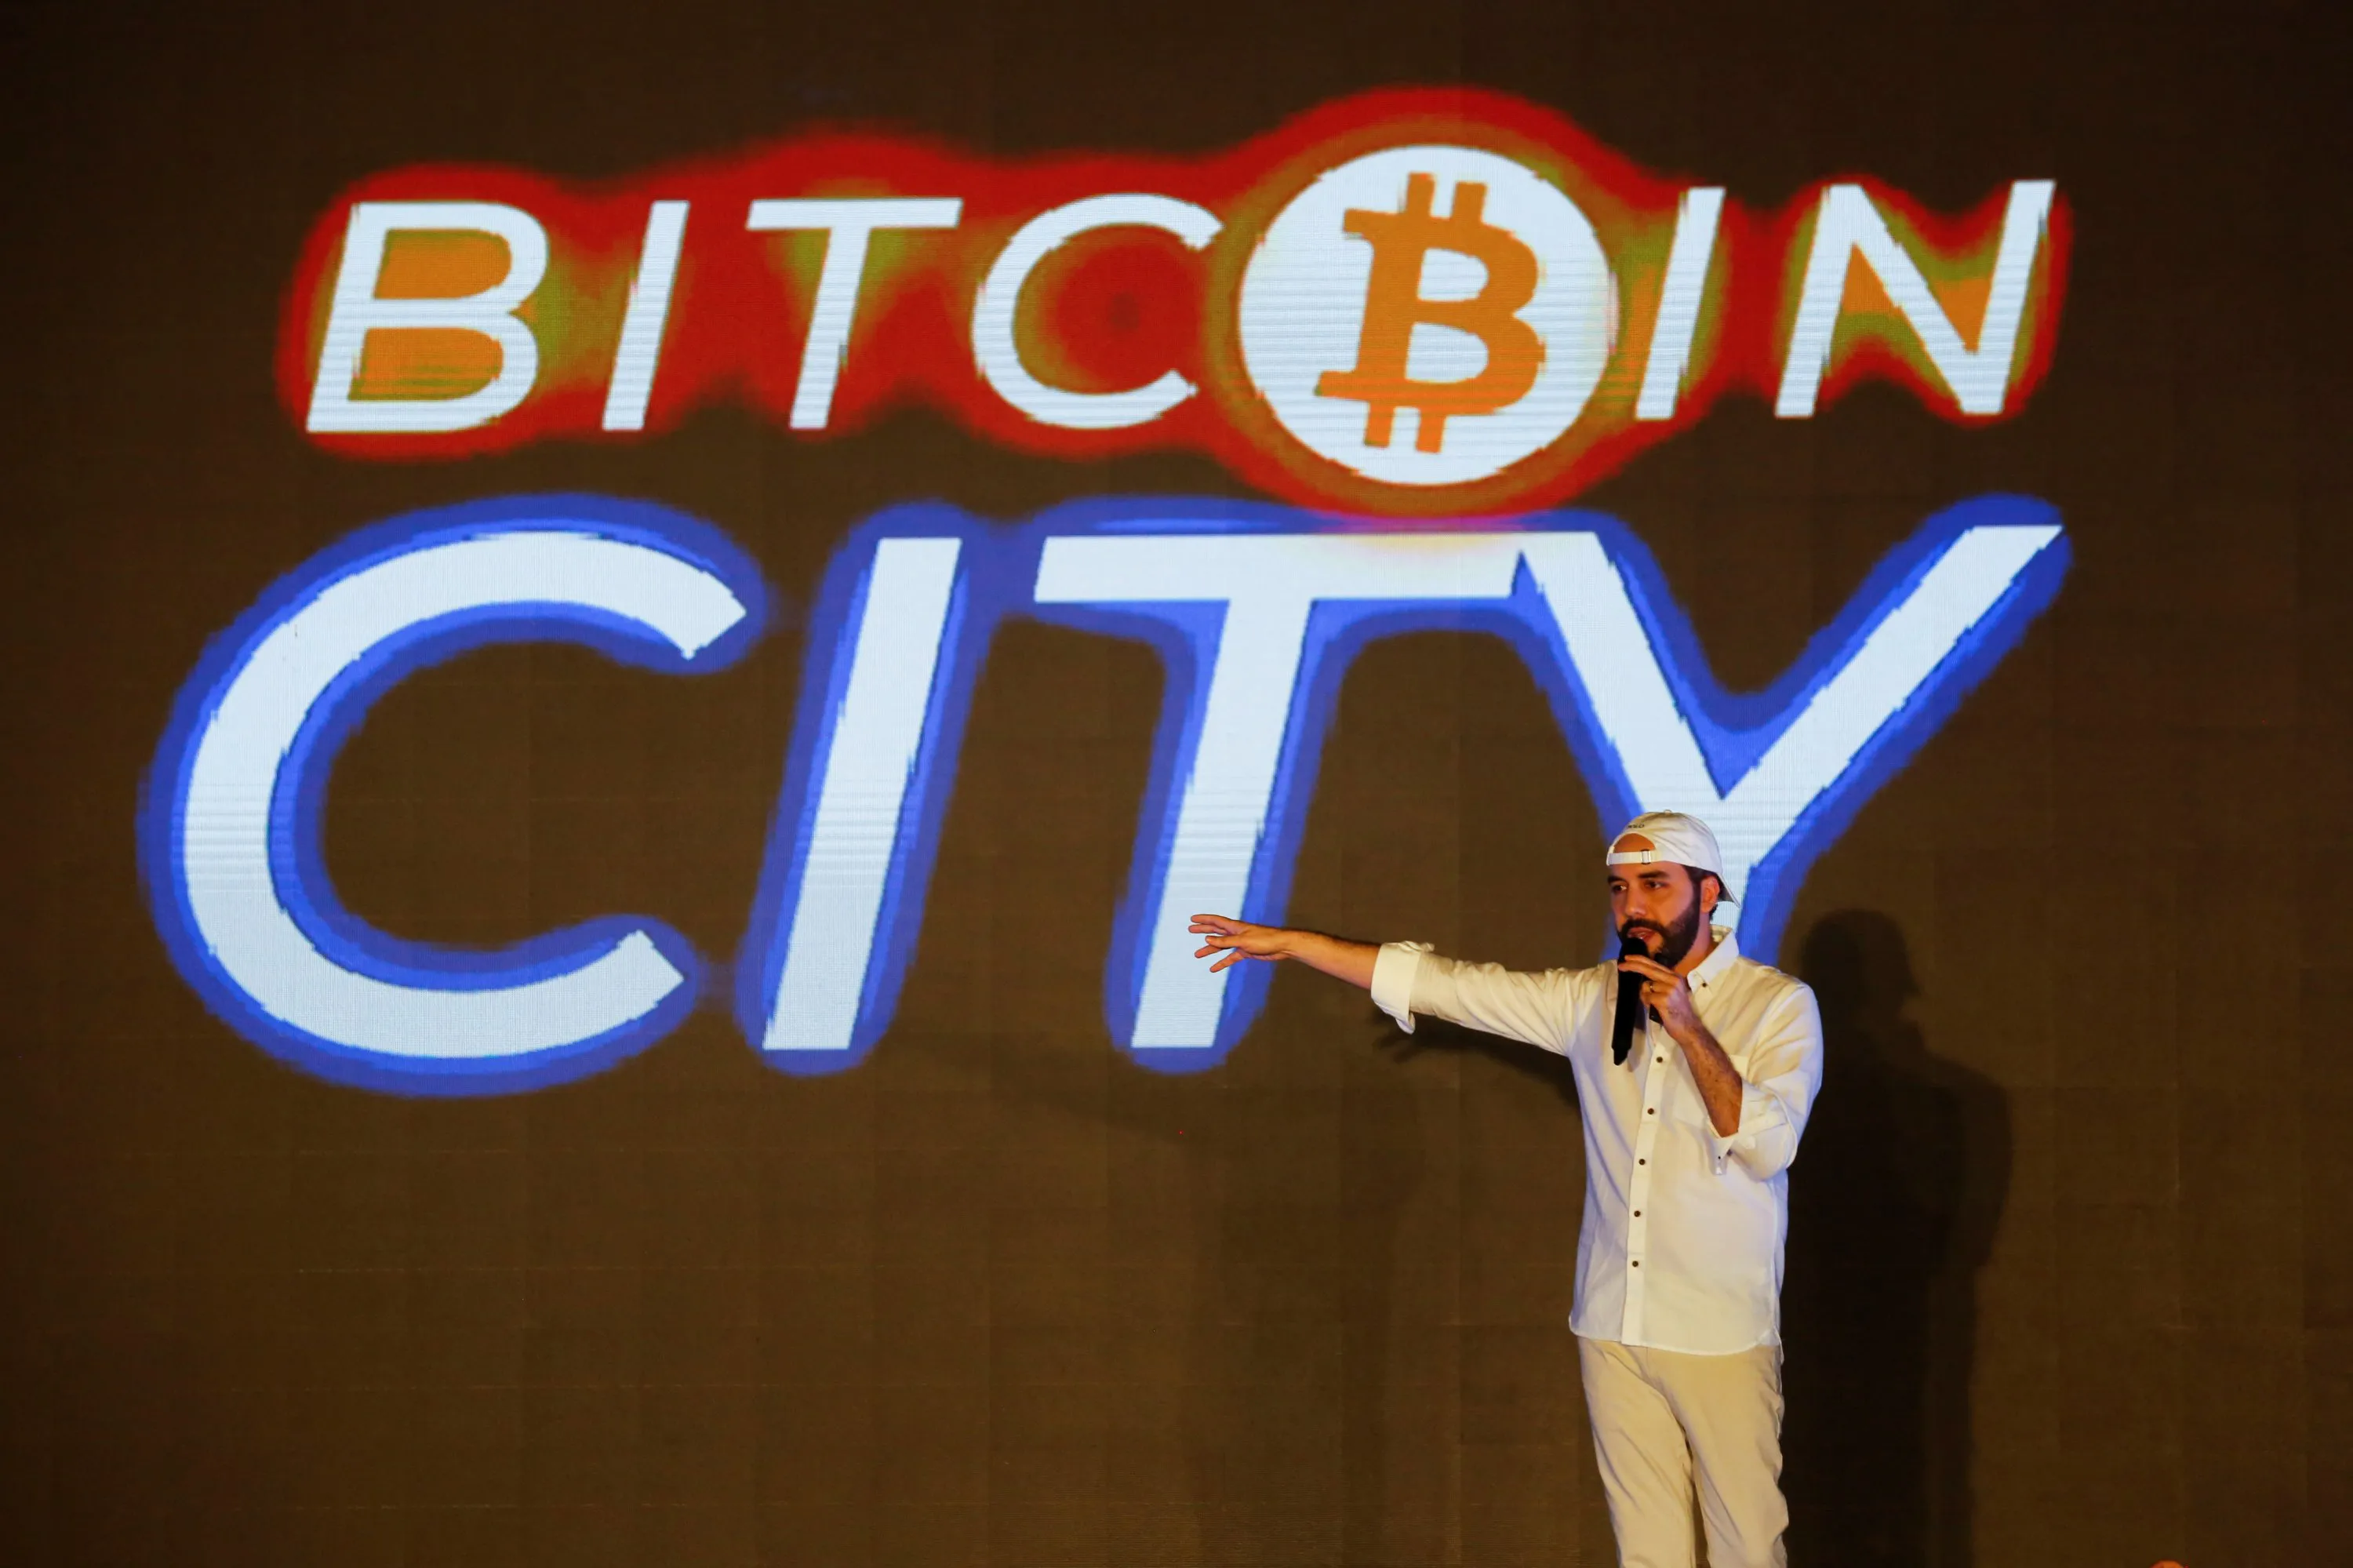 bitcoin city in el salvador